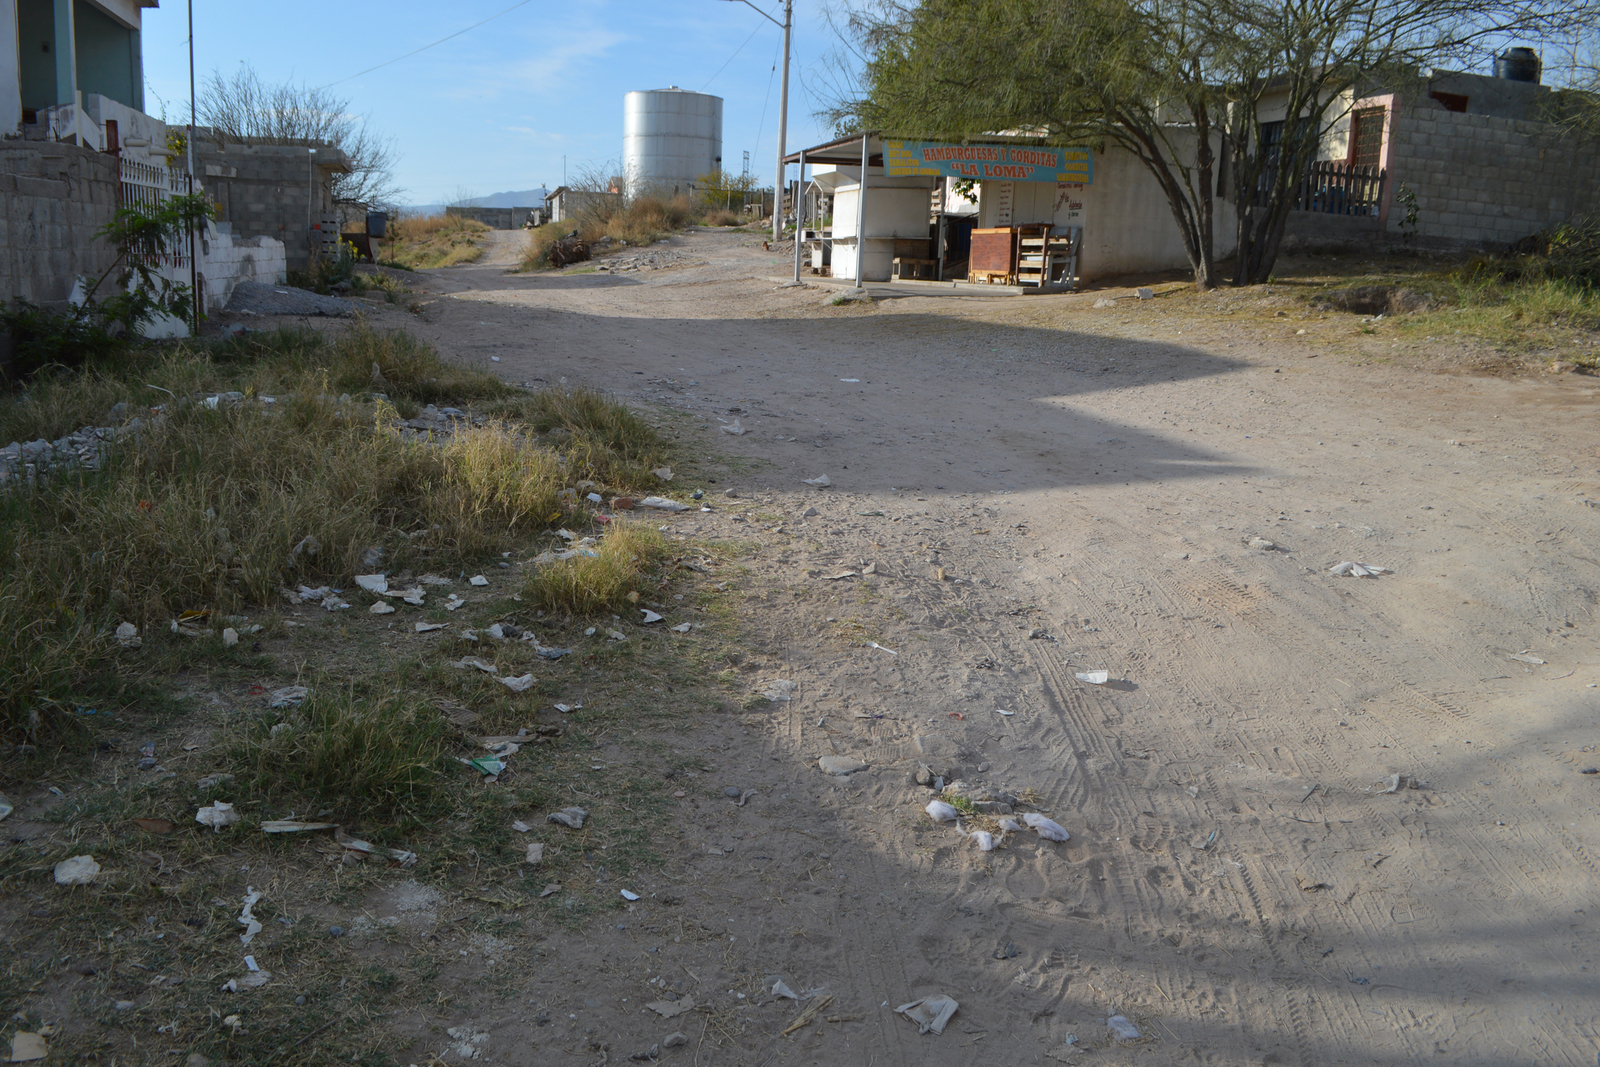 Habitantes del ejido Los Arenales, ubicado al sur de Torreón, piden pavimentación, alumbrado y aseo regular en su sector. (ROBERTO ITURRIAGA)